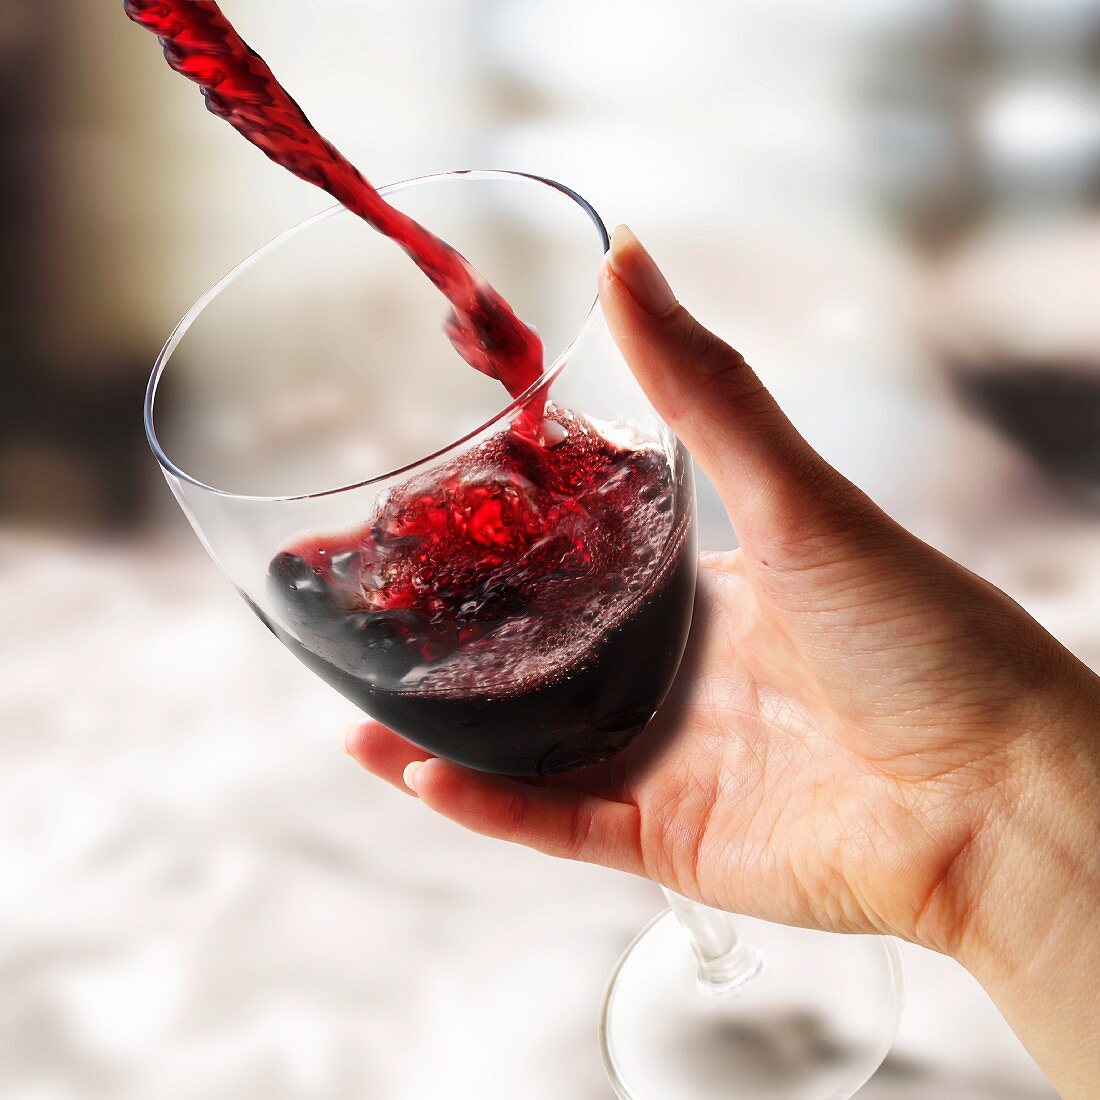 Rotwein in ein Glas gießen